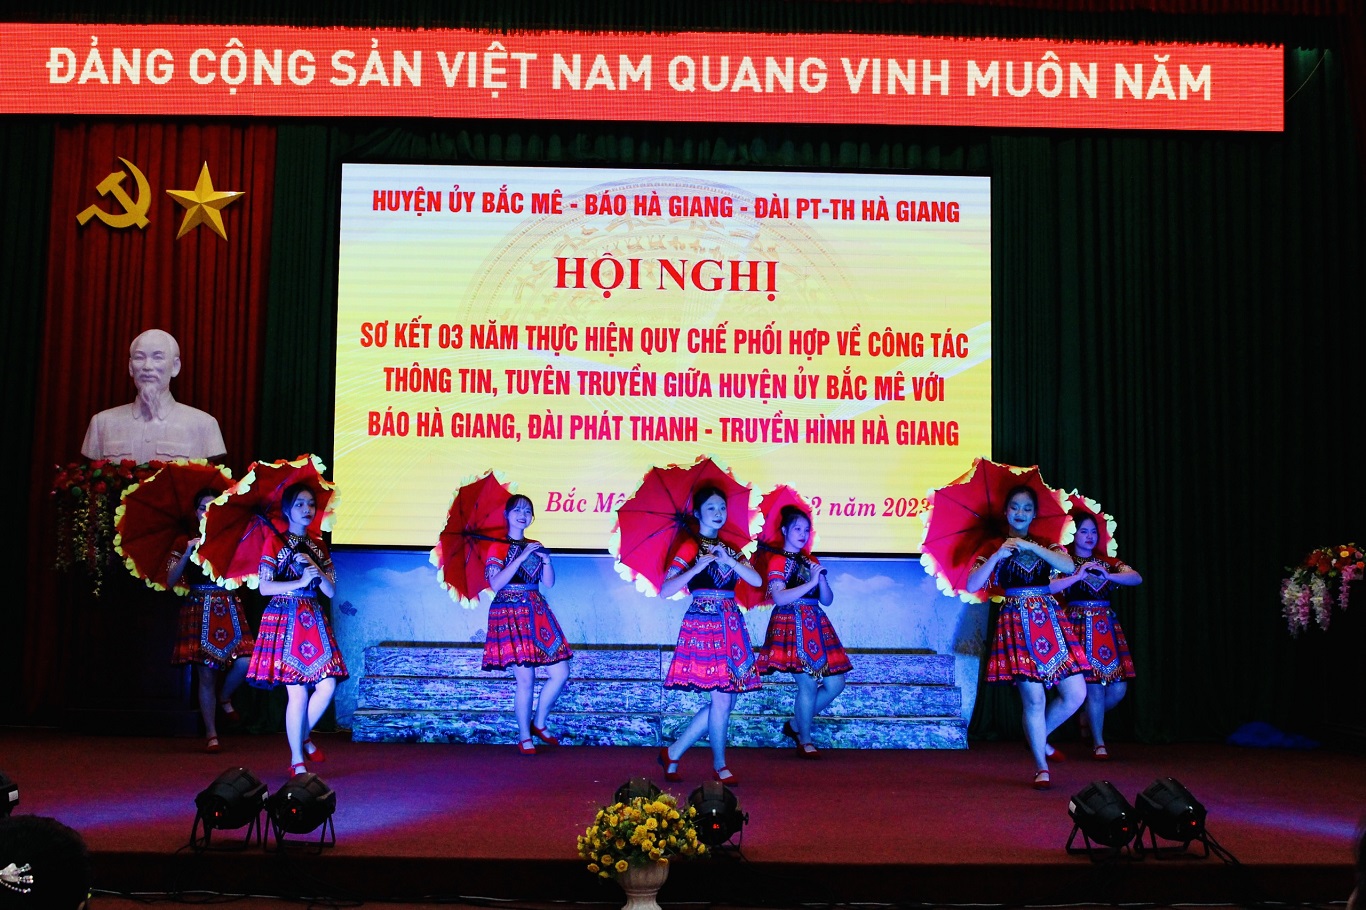 Hội nghị Sơ kết 03 năm thực hiện Quy chế phối hợp giữa huyện Bắc Mê với Báo Hà Giang và Đài PT-TH tỉnh Hà Giang